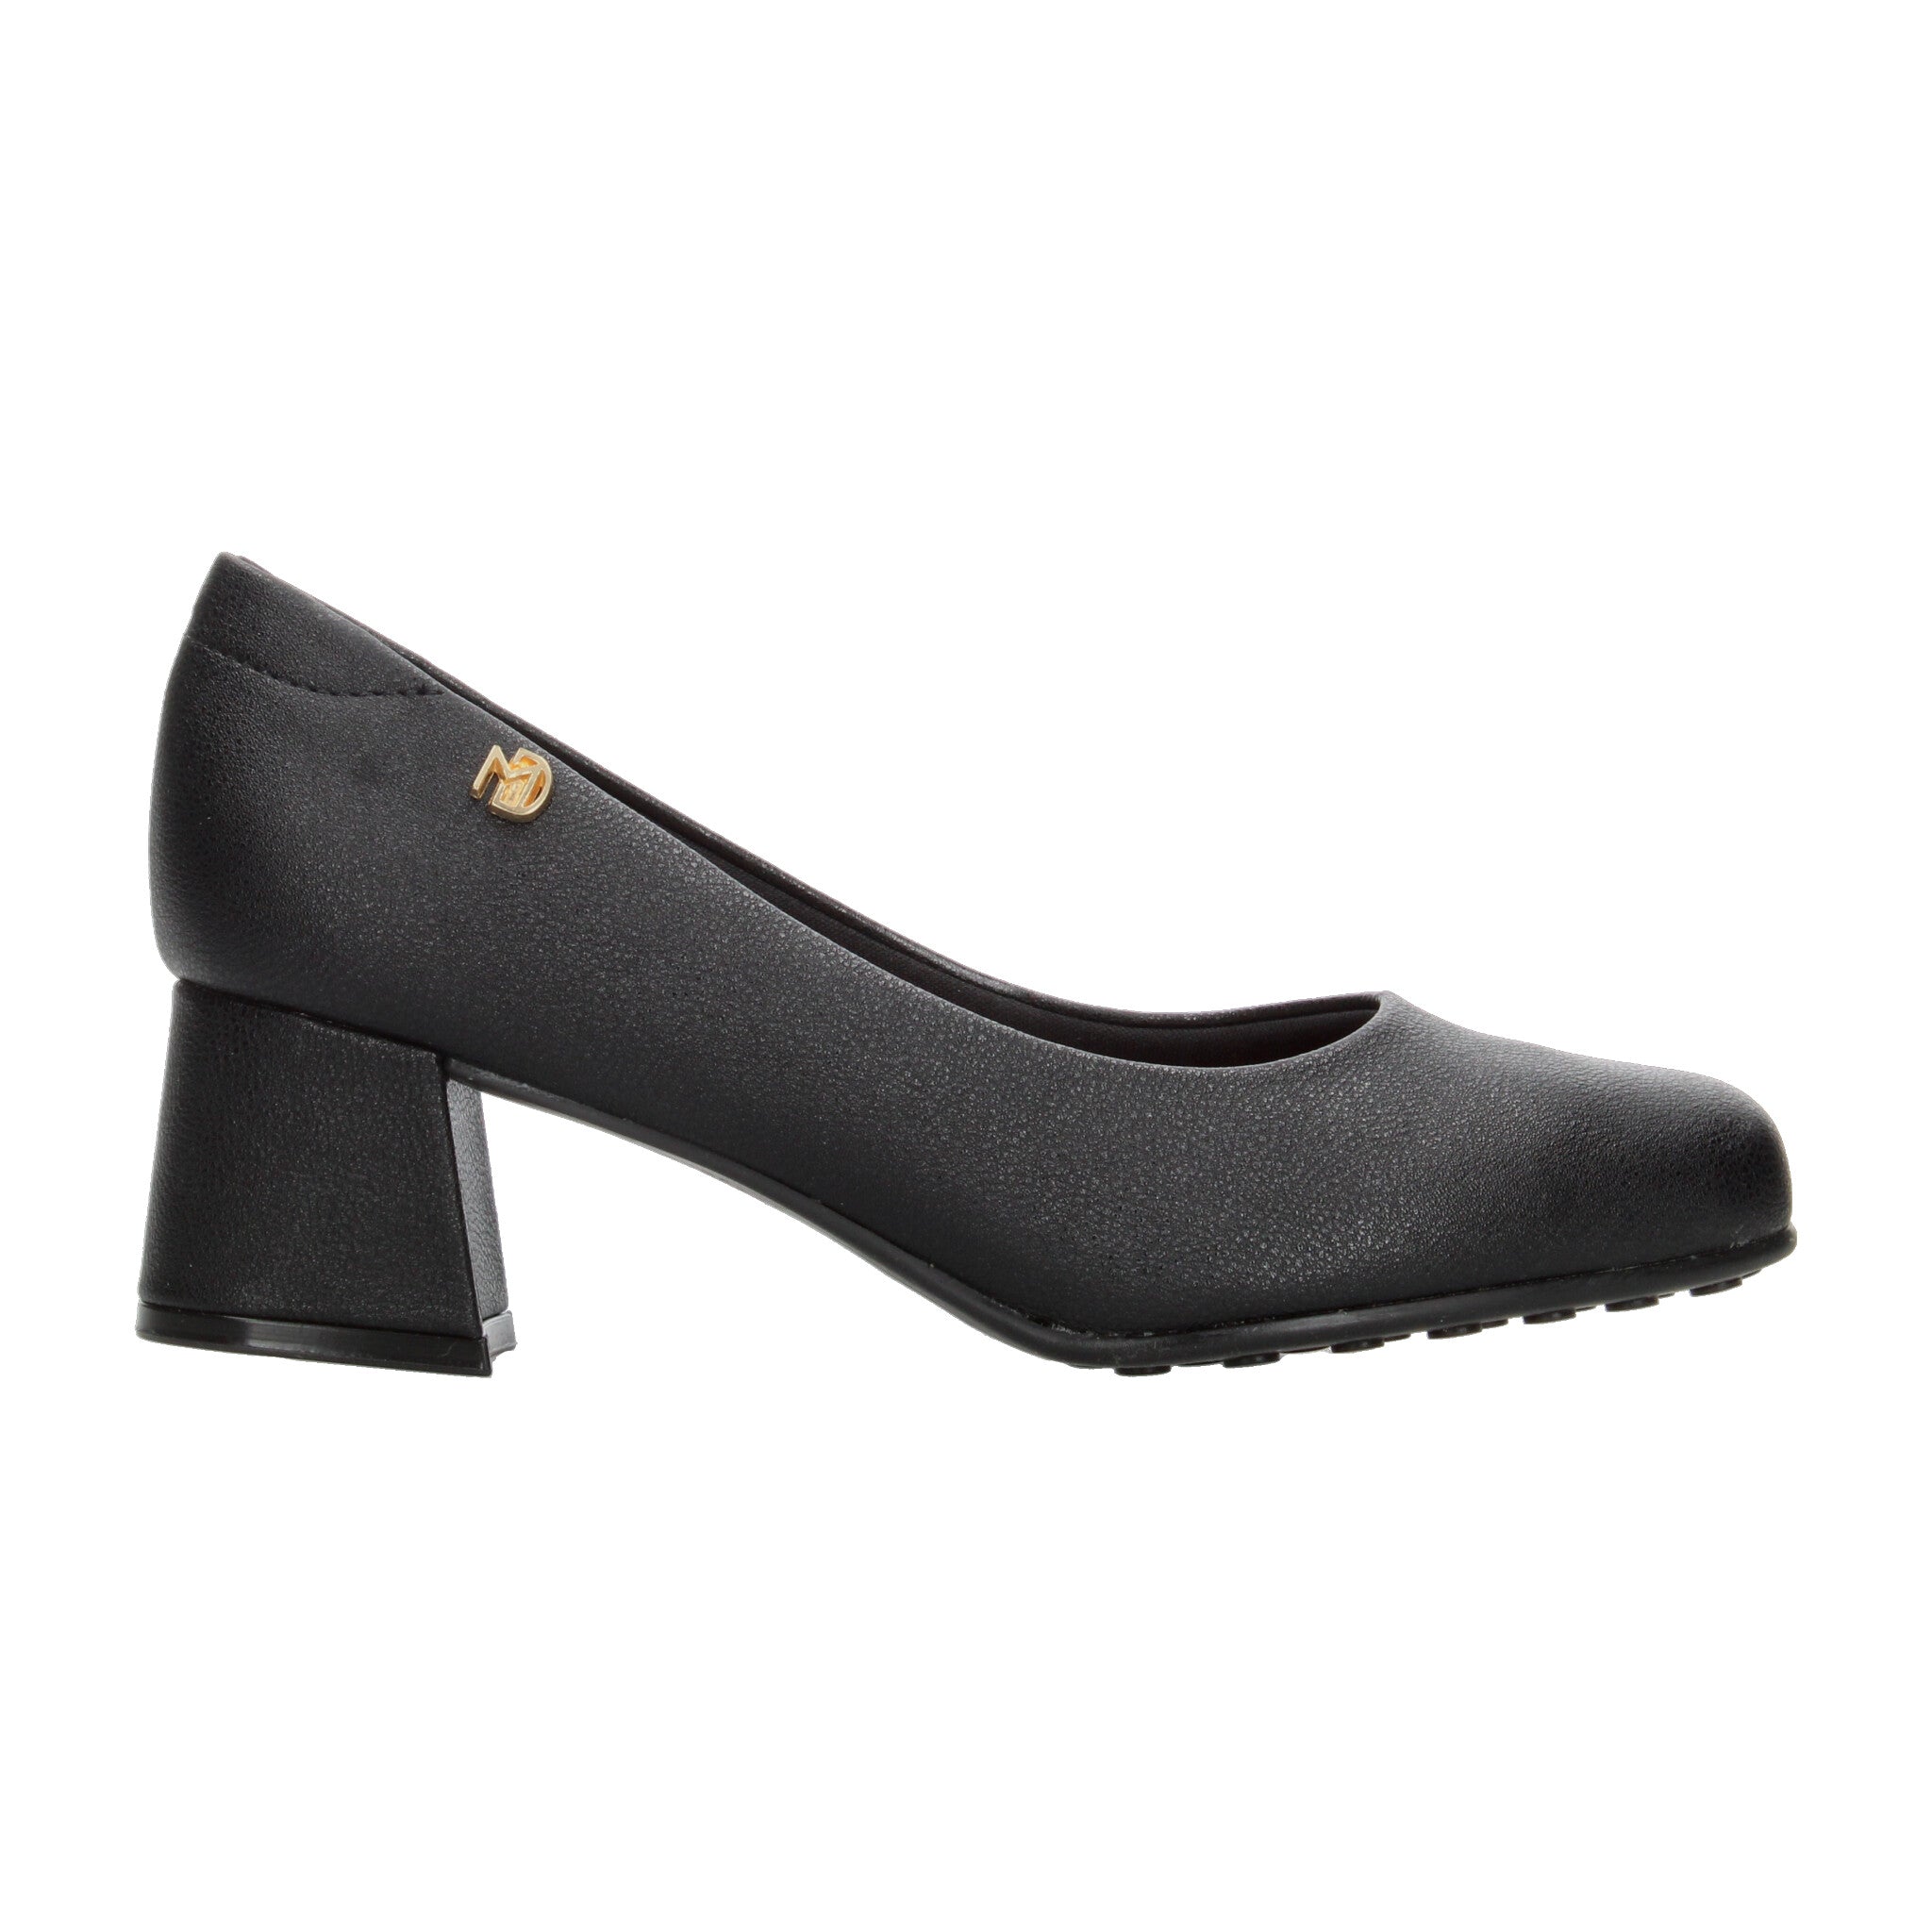 Zapatillas Modare Negro para Mujer [MOD36] MODARE 